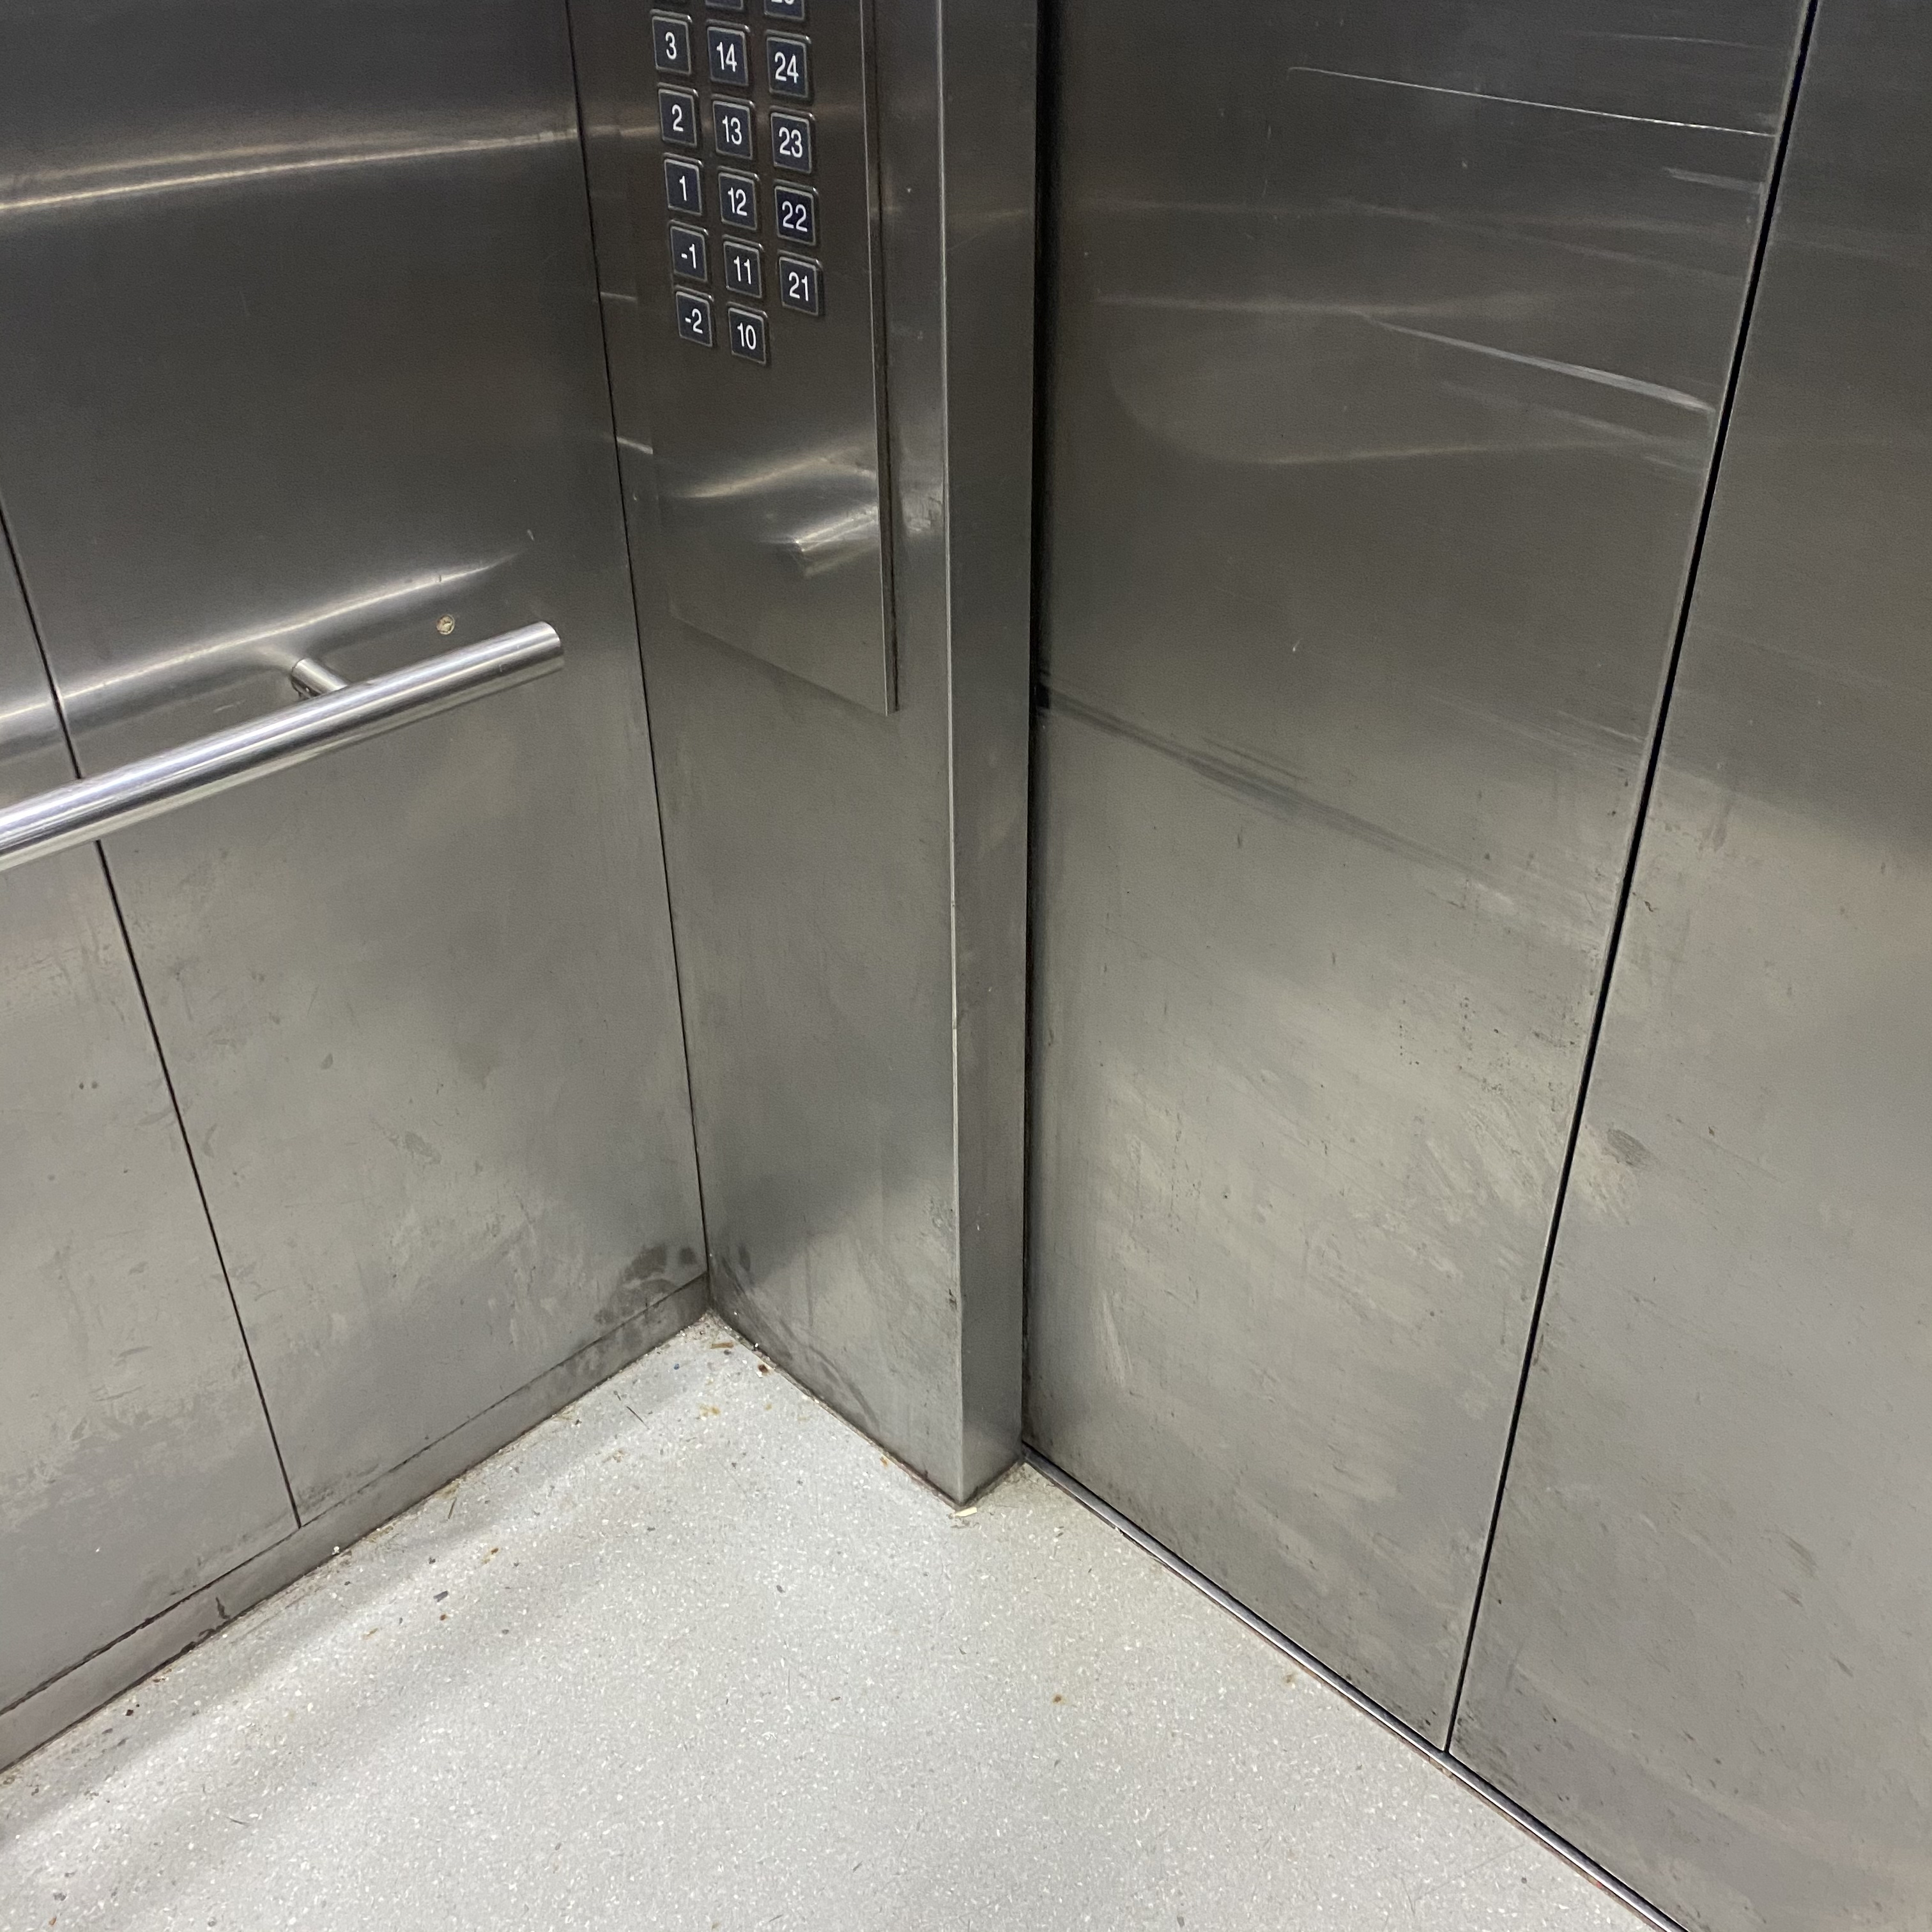 旧电梯改造完成 老年人告别爬楼梯